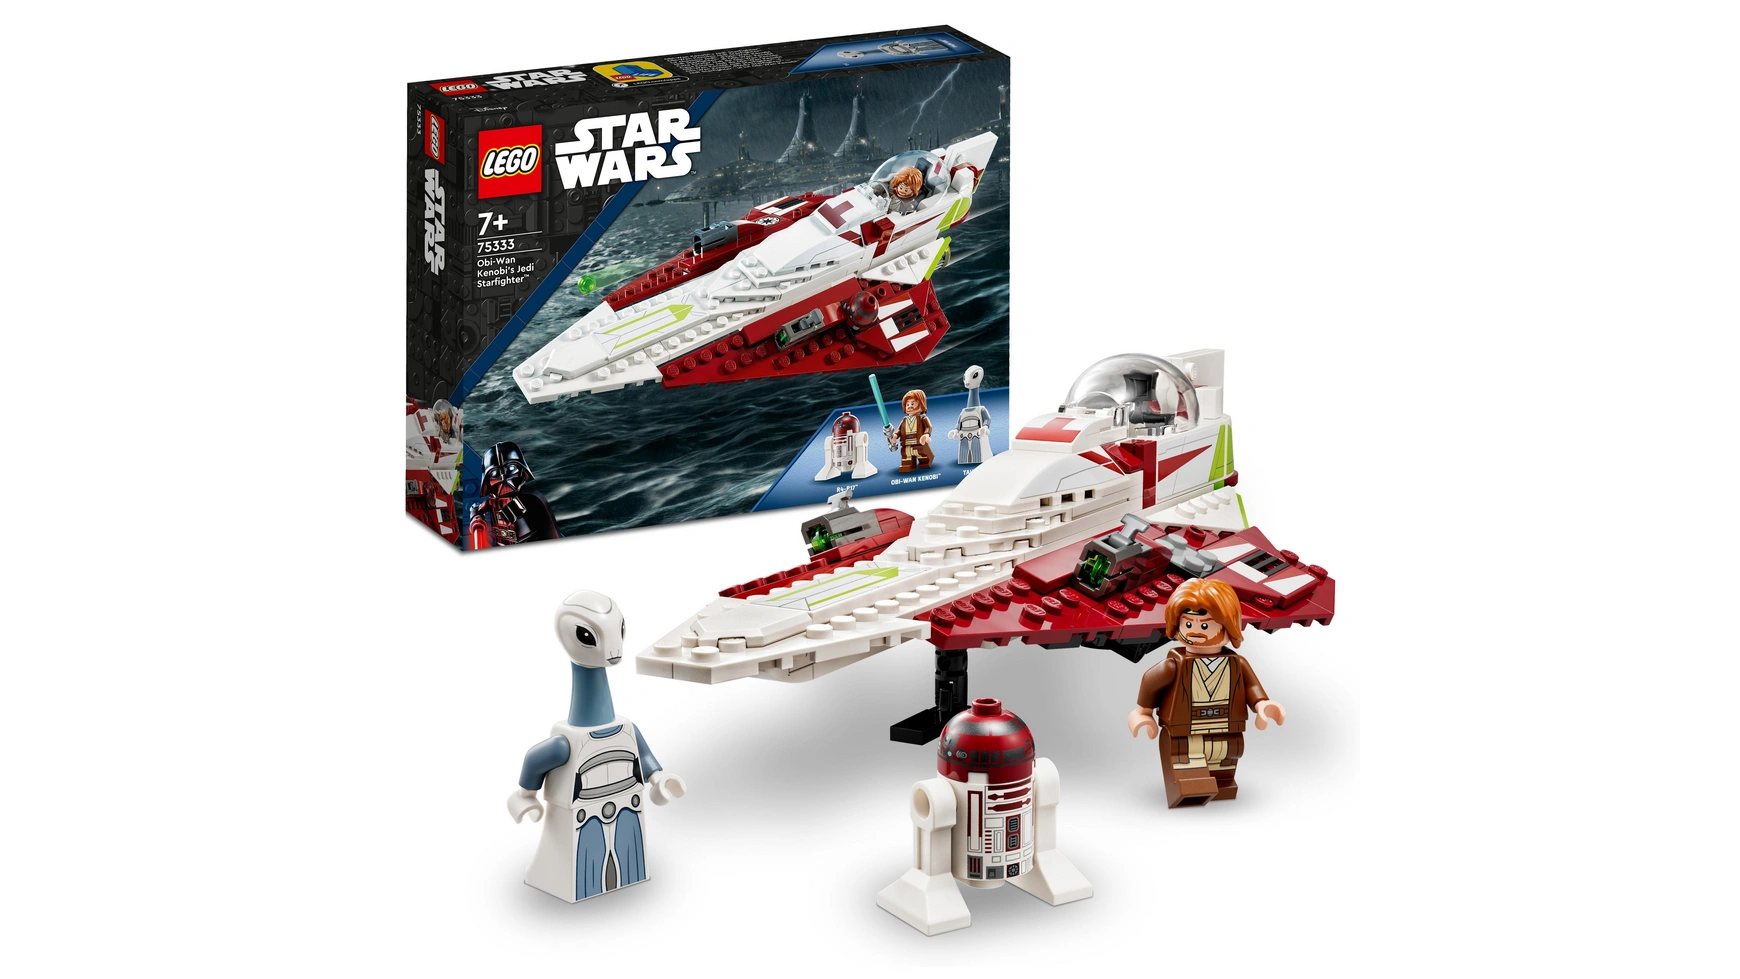 Lego Star Wars Набор Звездный истребитель джедая Оби-Вана Кеноби